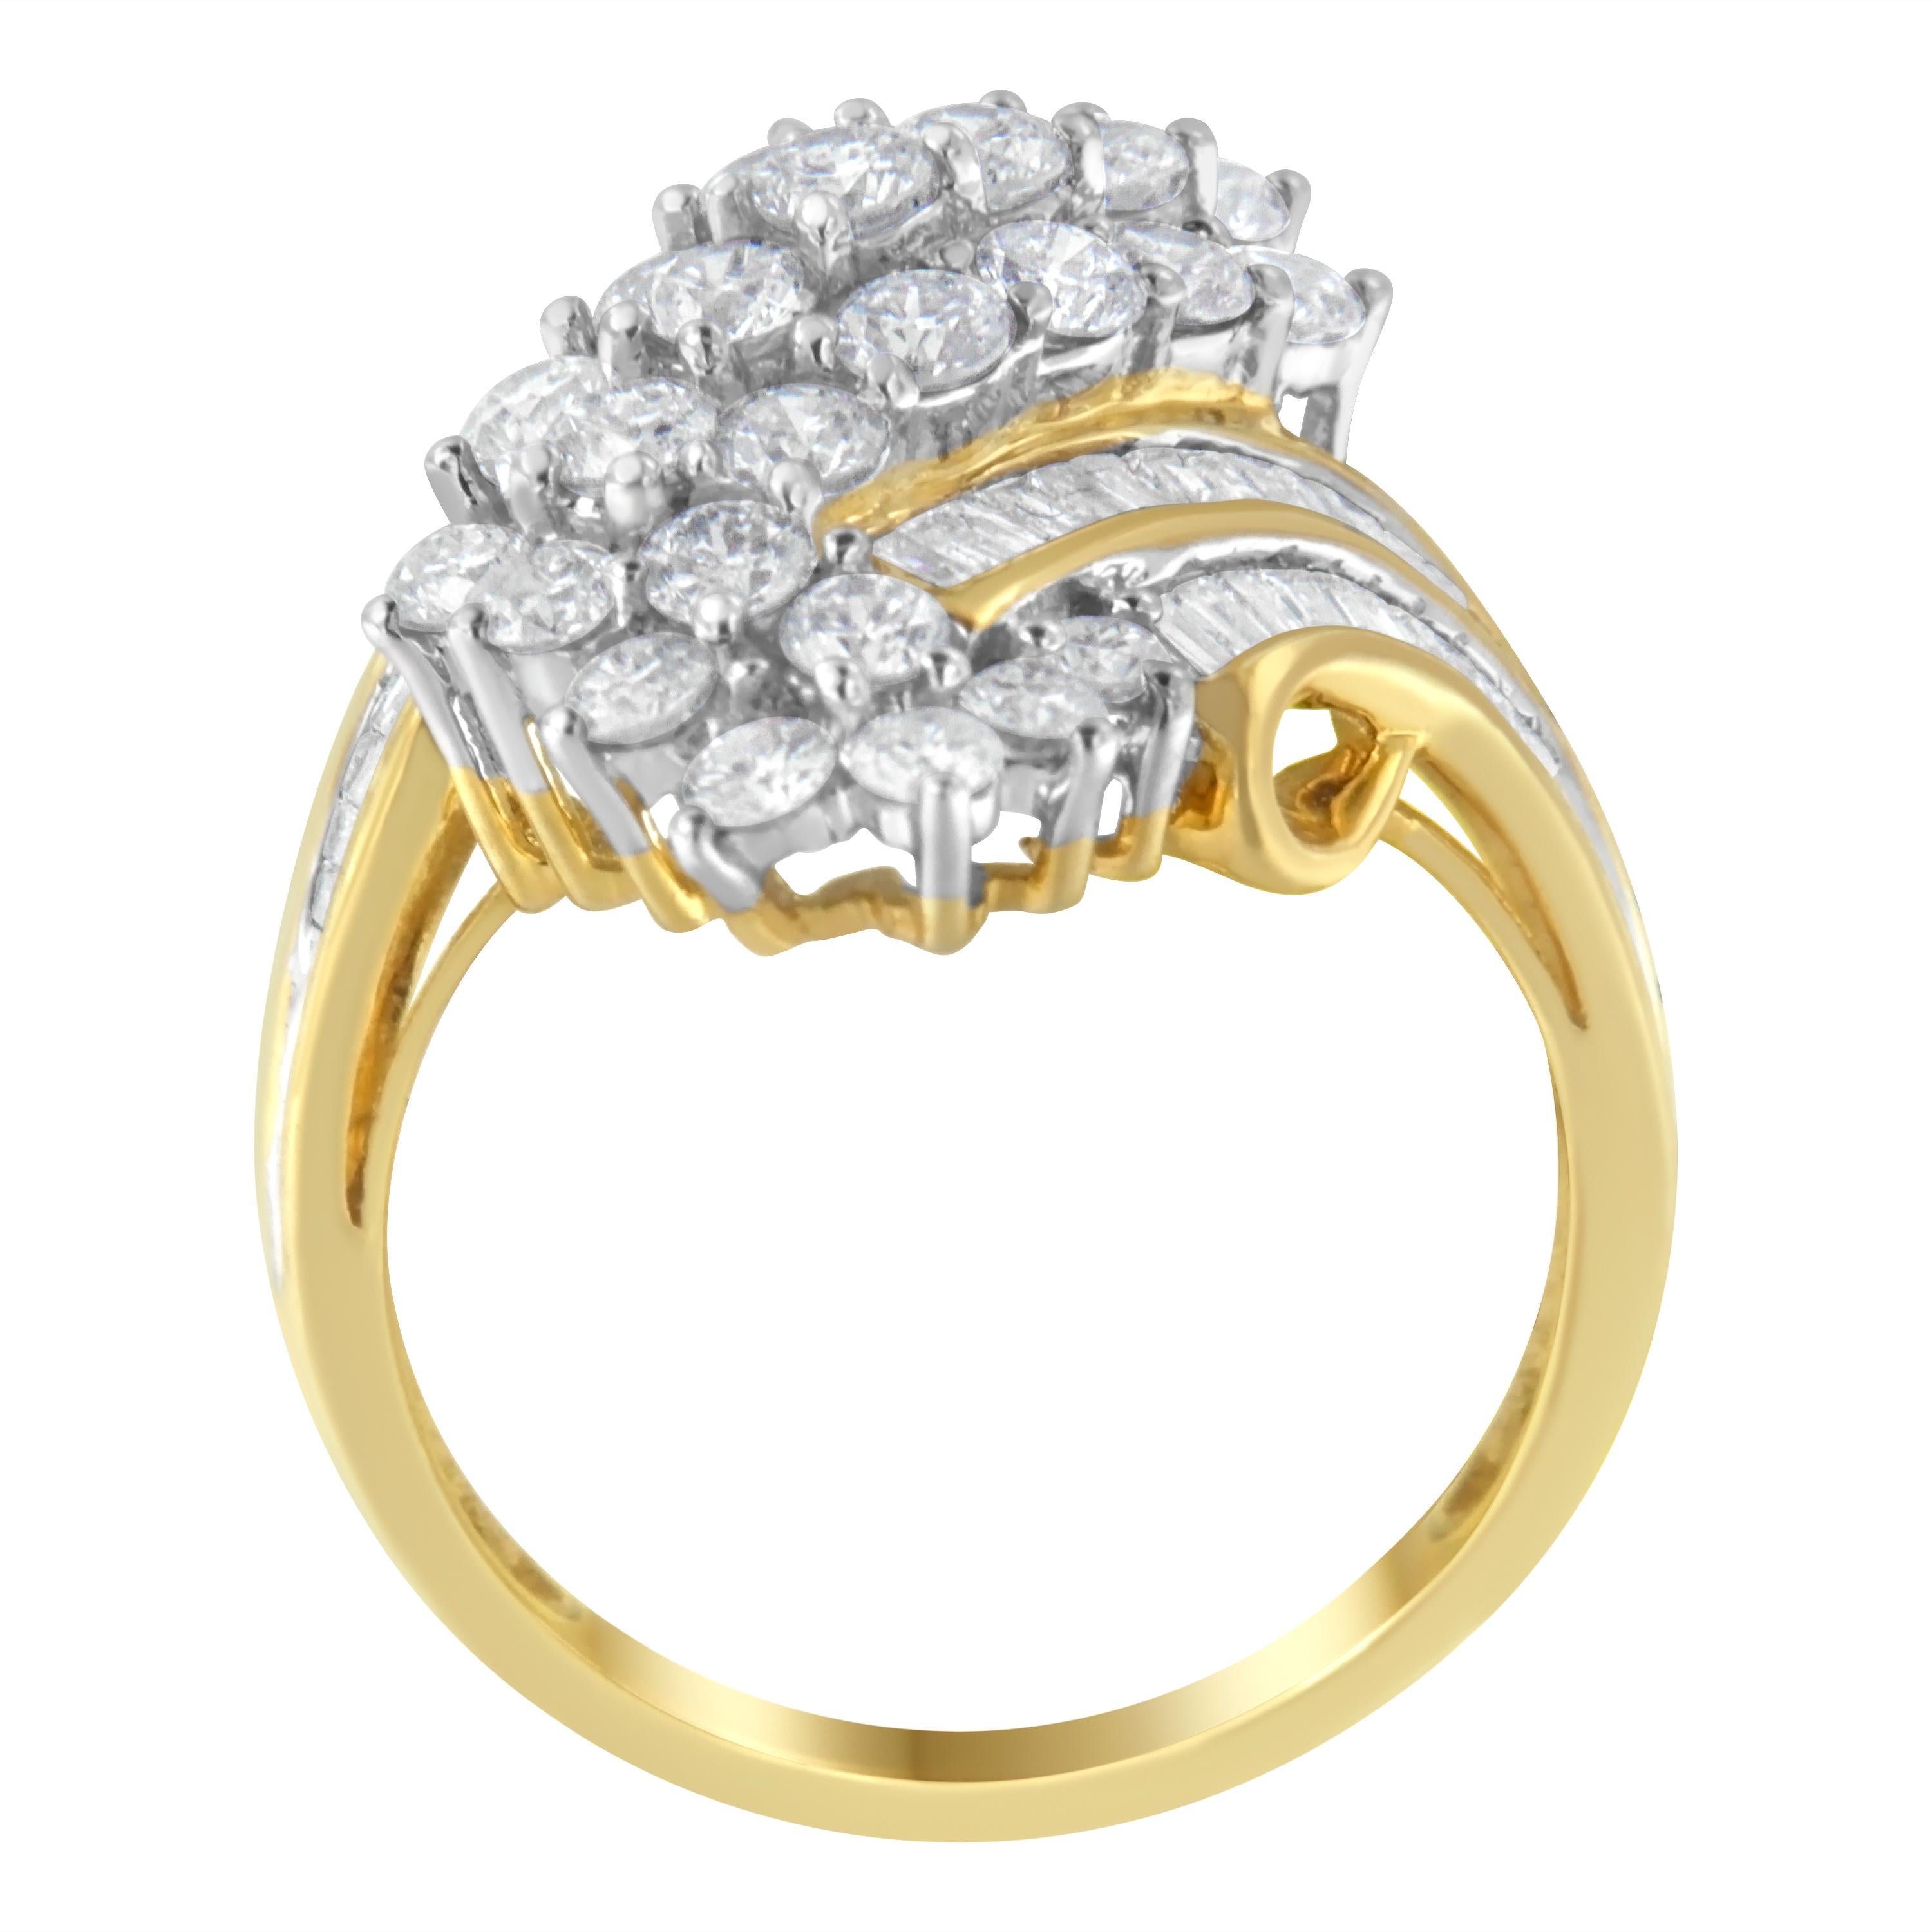 Ein Diamant-Cluster-Ring, der mit 81 Diamanten im Retro-Stil glänzt. Der Mix aus runden Brillanten und Baguette-Diamanten verleiht dem Design einen geometrischen Kontrast, während das Band aus 10 Karat Gelbgold eine wärmende Note verleiht. Das